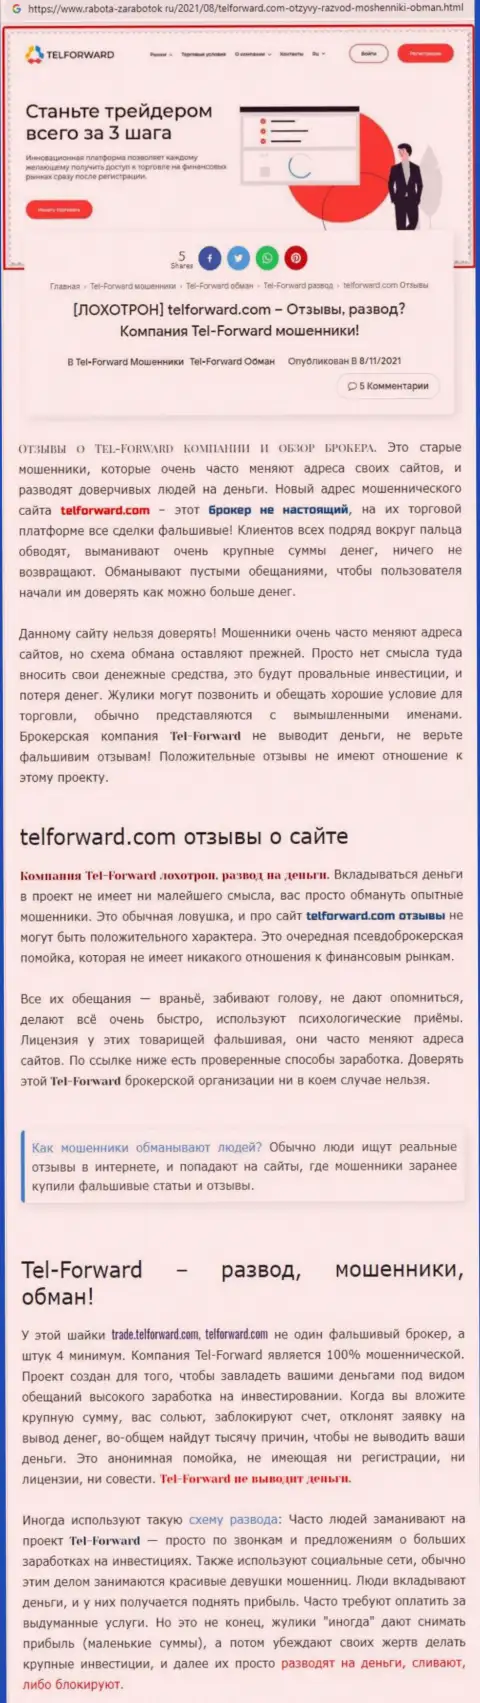 TelForward - ОБМАНЩИКИ !!! Условия для торгов, как замануха для доверчивых людей - обзор деяний